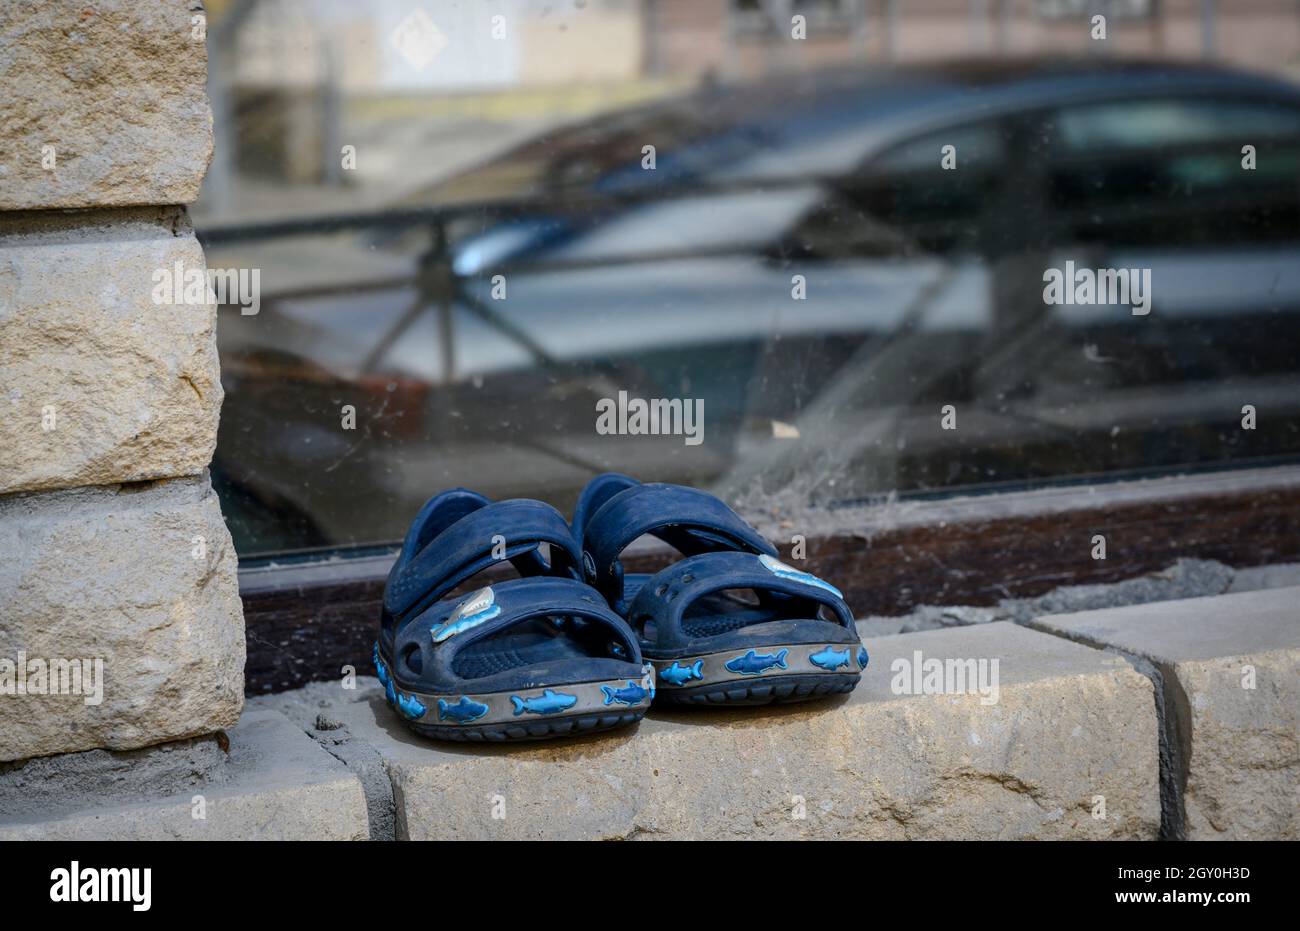 Pantofole per bambini sul davanzale di una casa in mattoni con il riflesso di un'auto nel vetro. Povertà, perdita, lusso Foto Stock